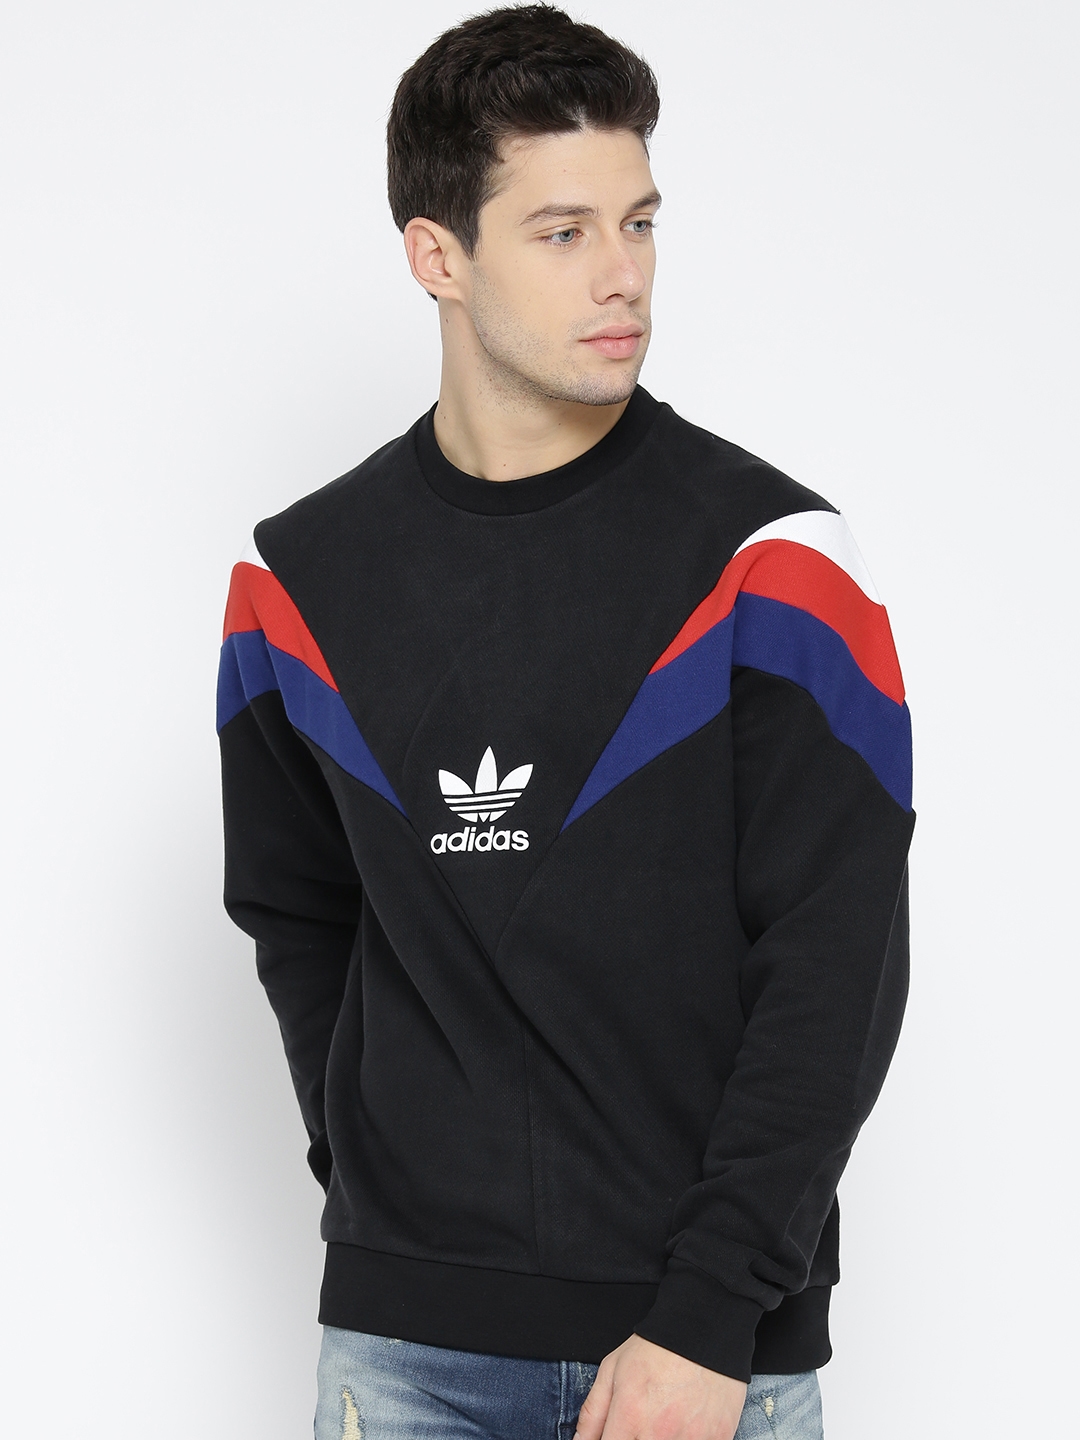 Buy Adidas Originals Men Black Crew Colourblocked Sweatshirt - Sweatshirts for Men 2083613 | Myntra